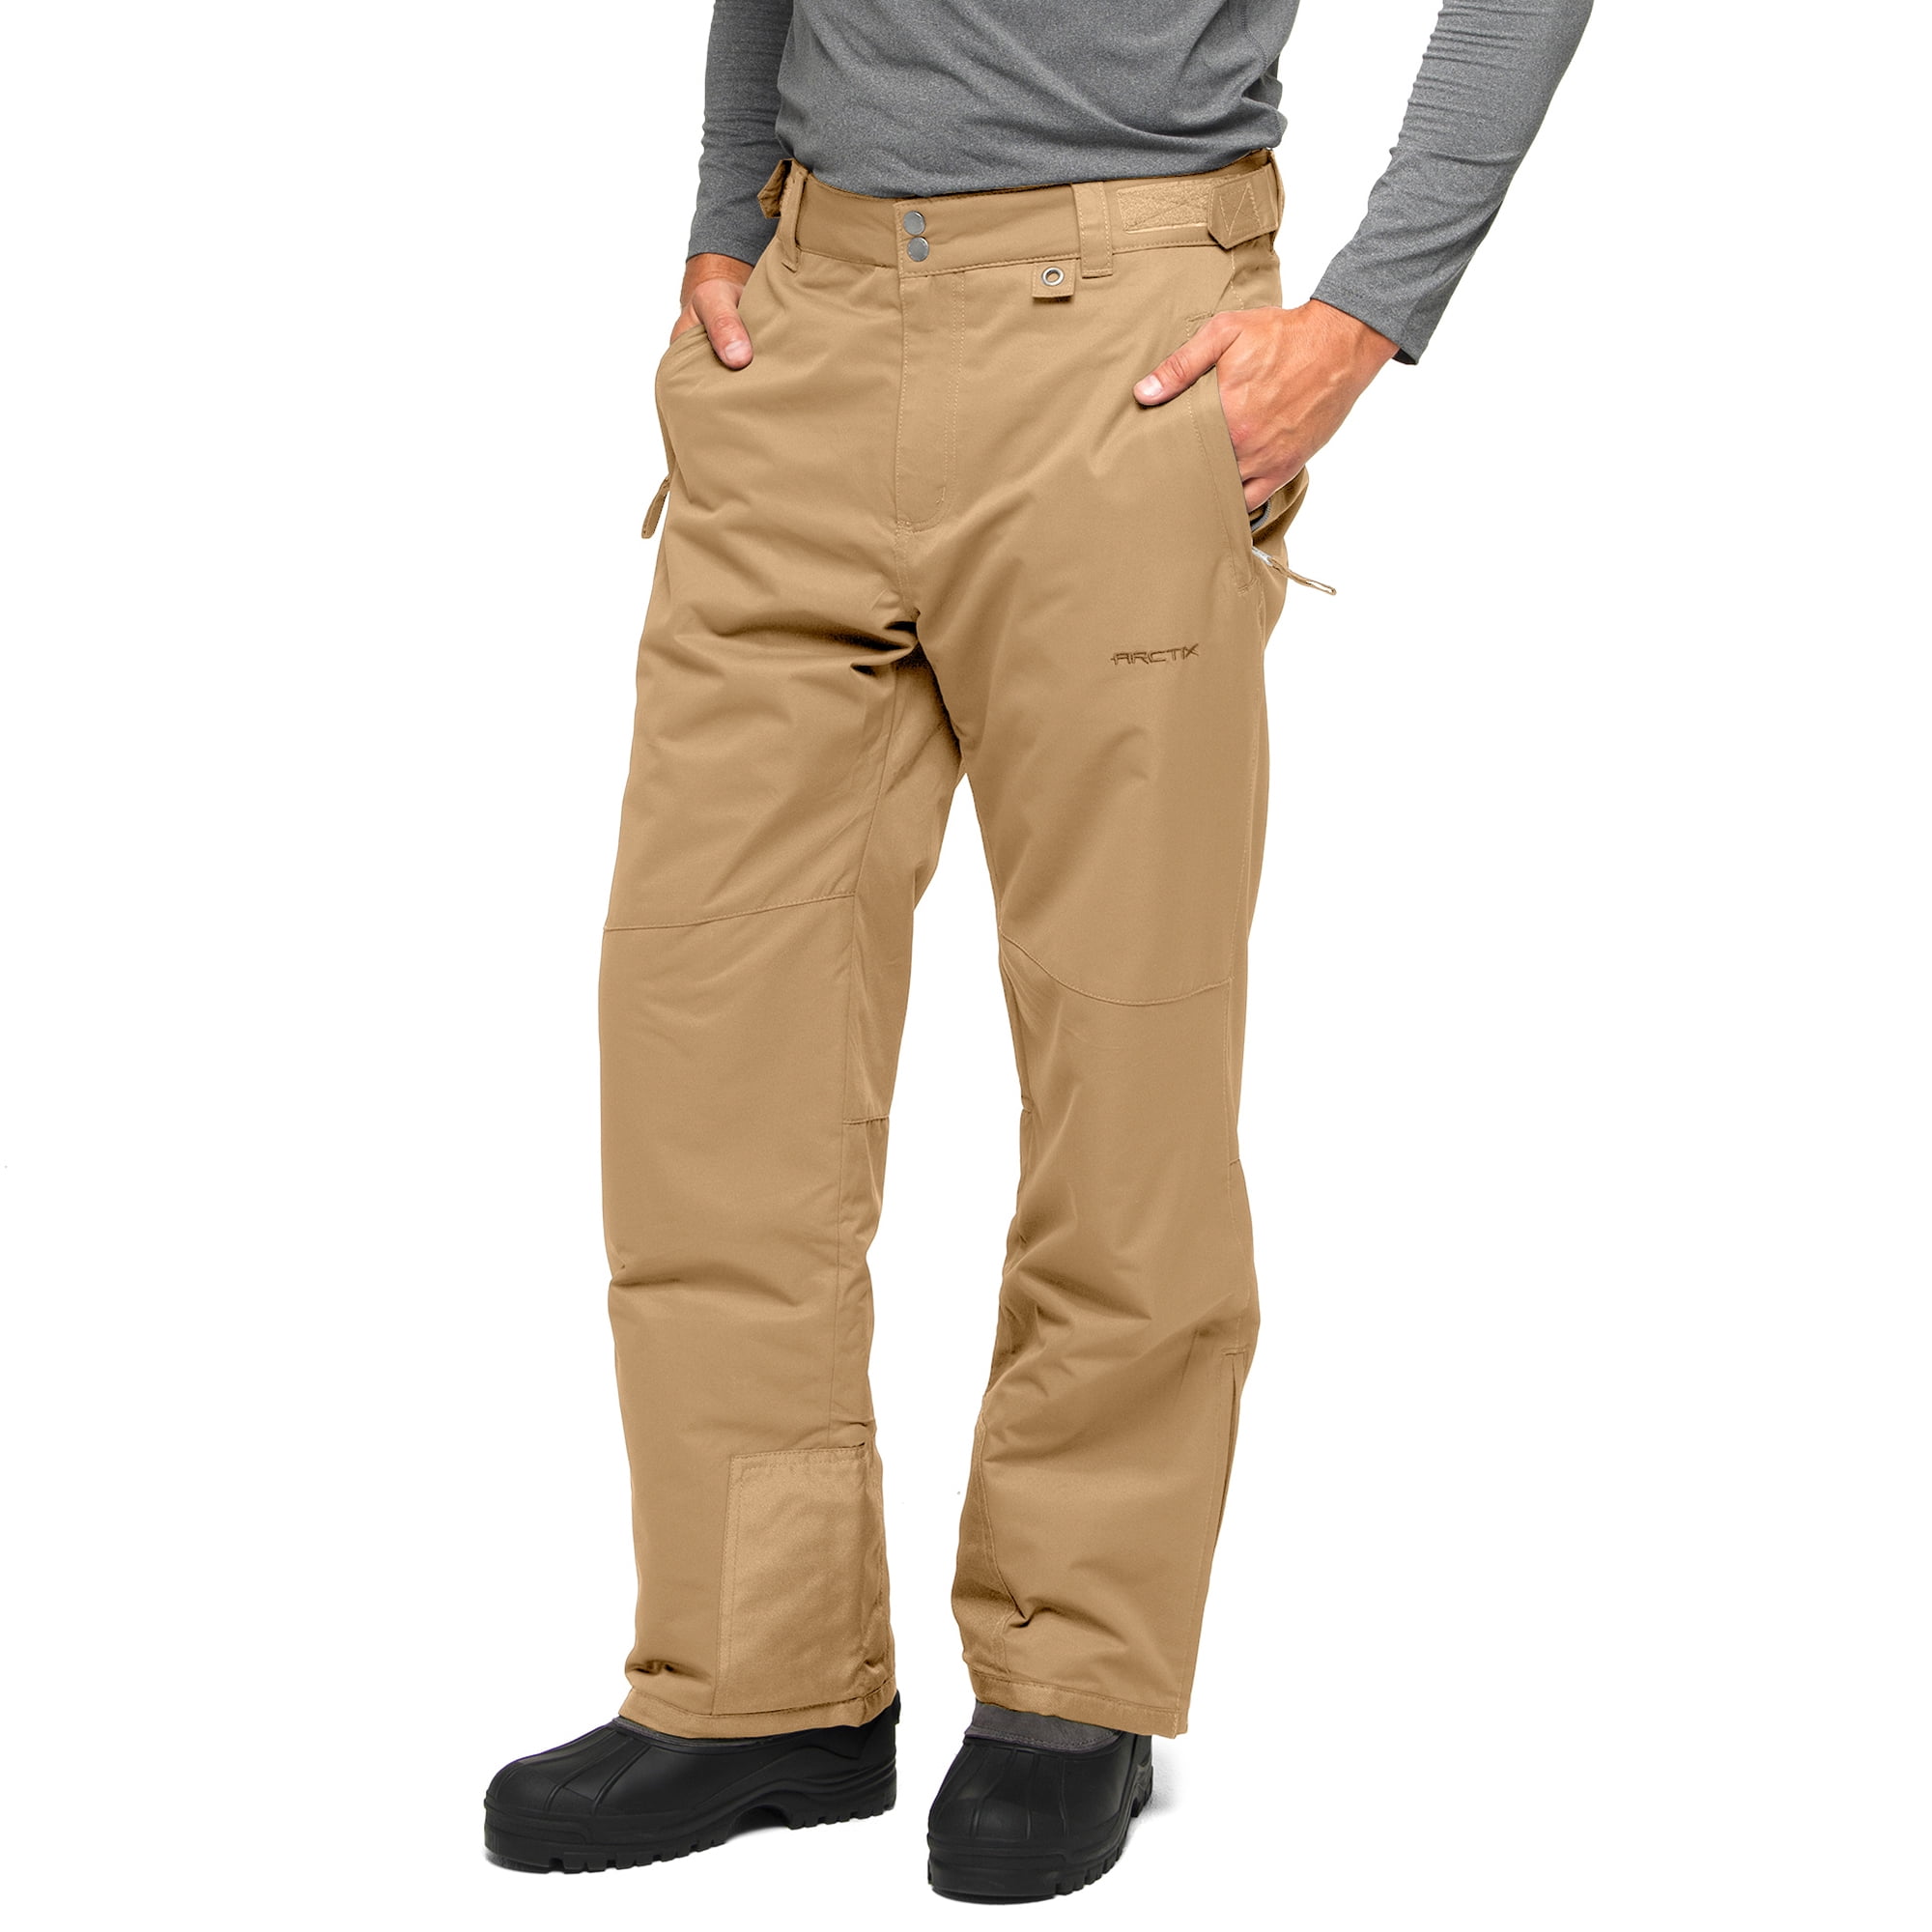 Lot - New Boys Gray Arctix Brand Snow Pants, Size XL